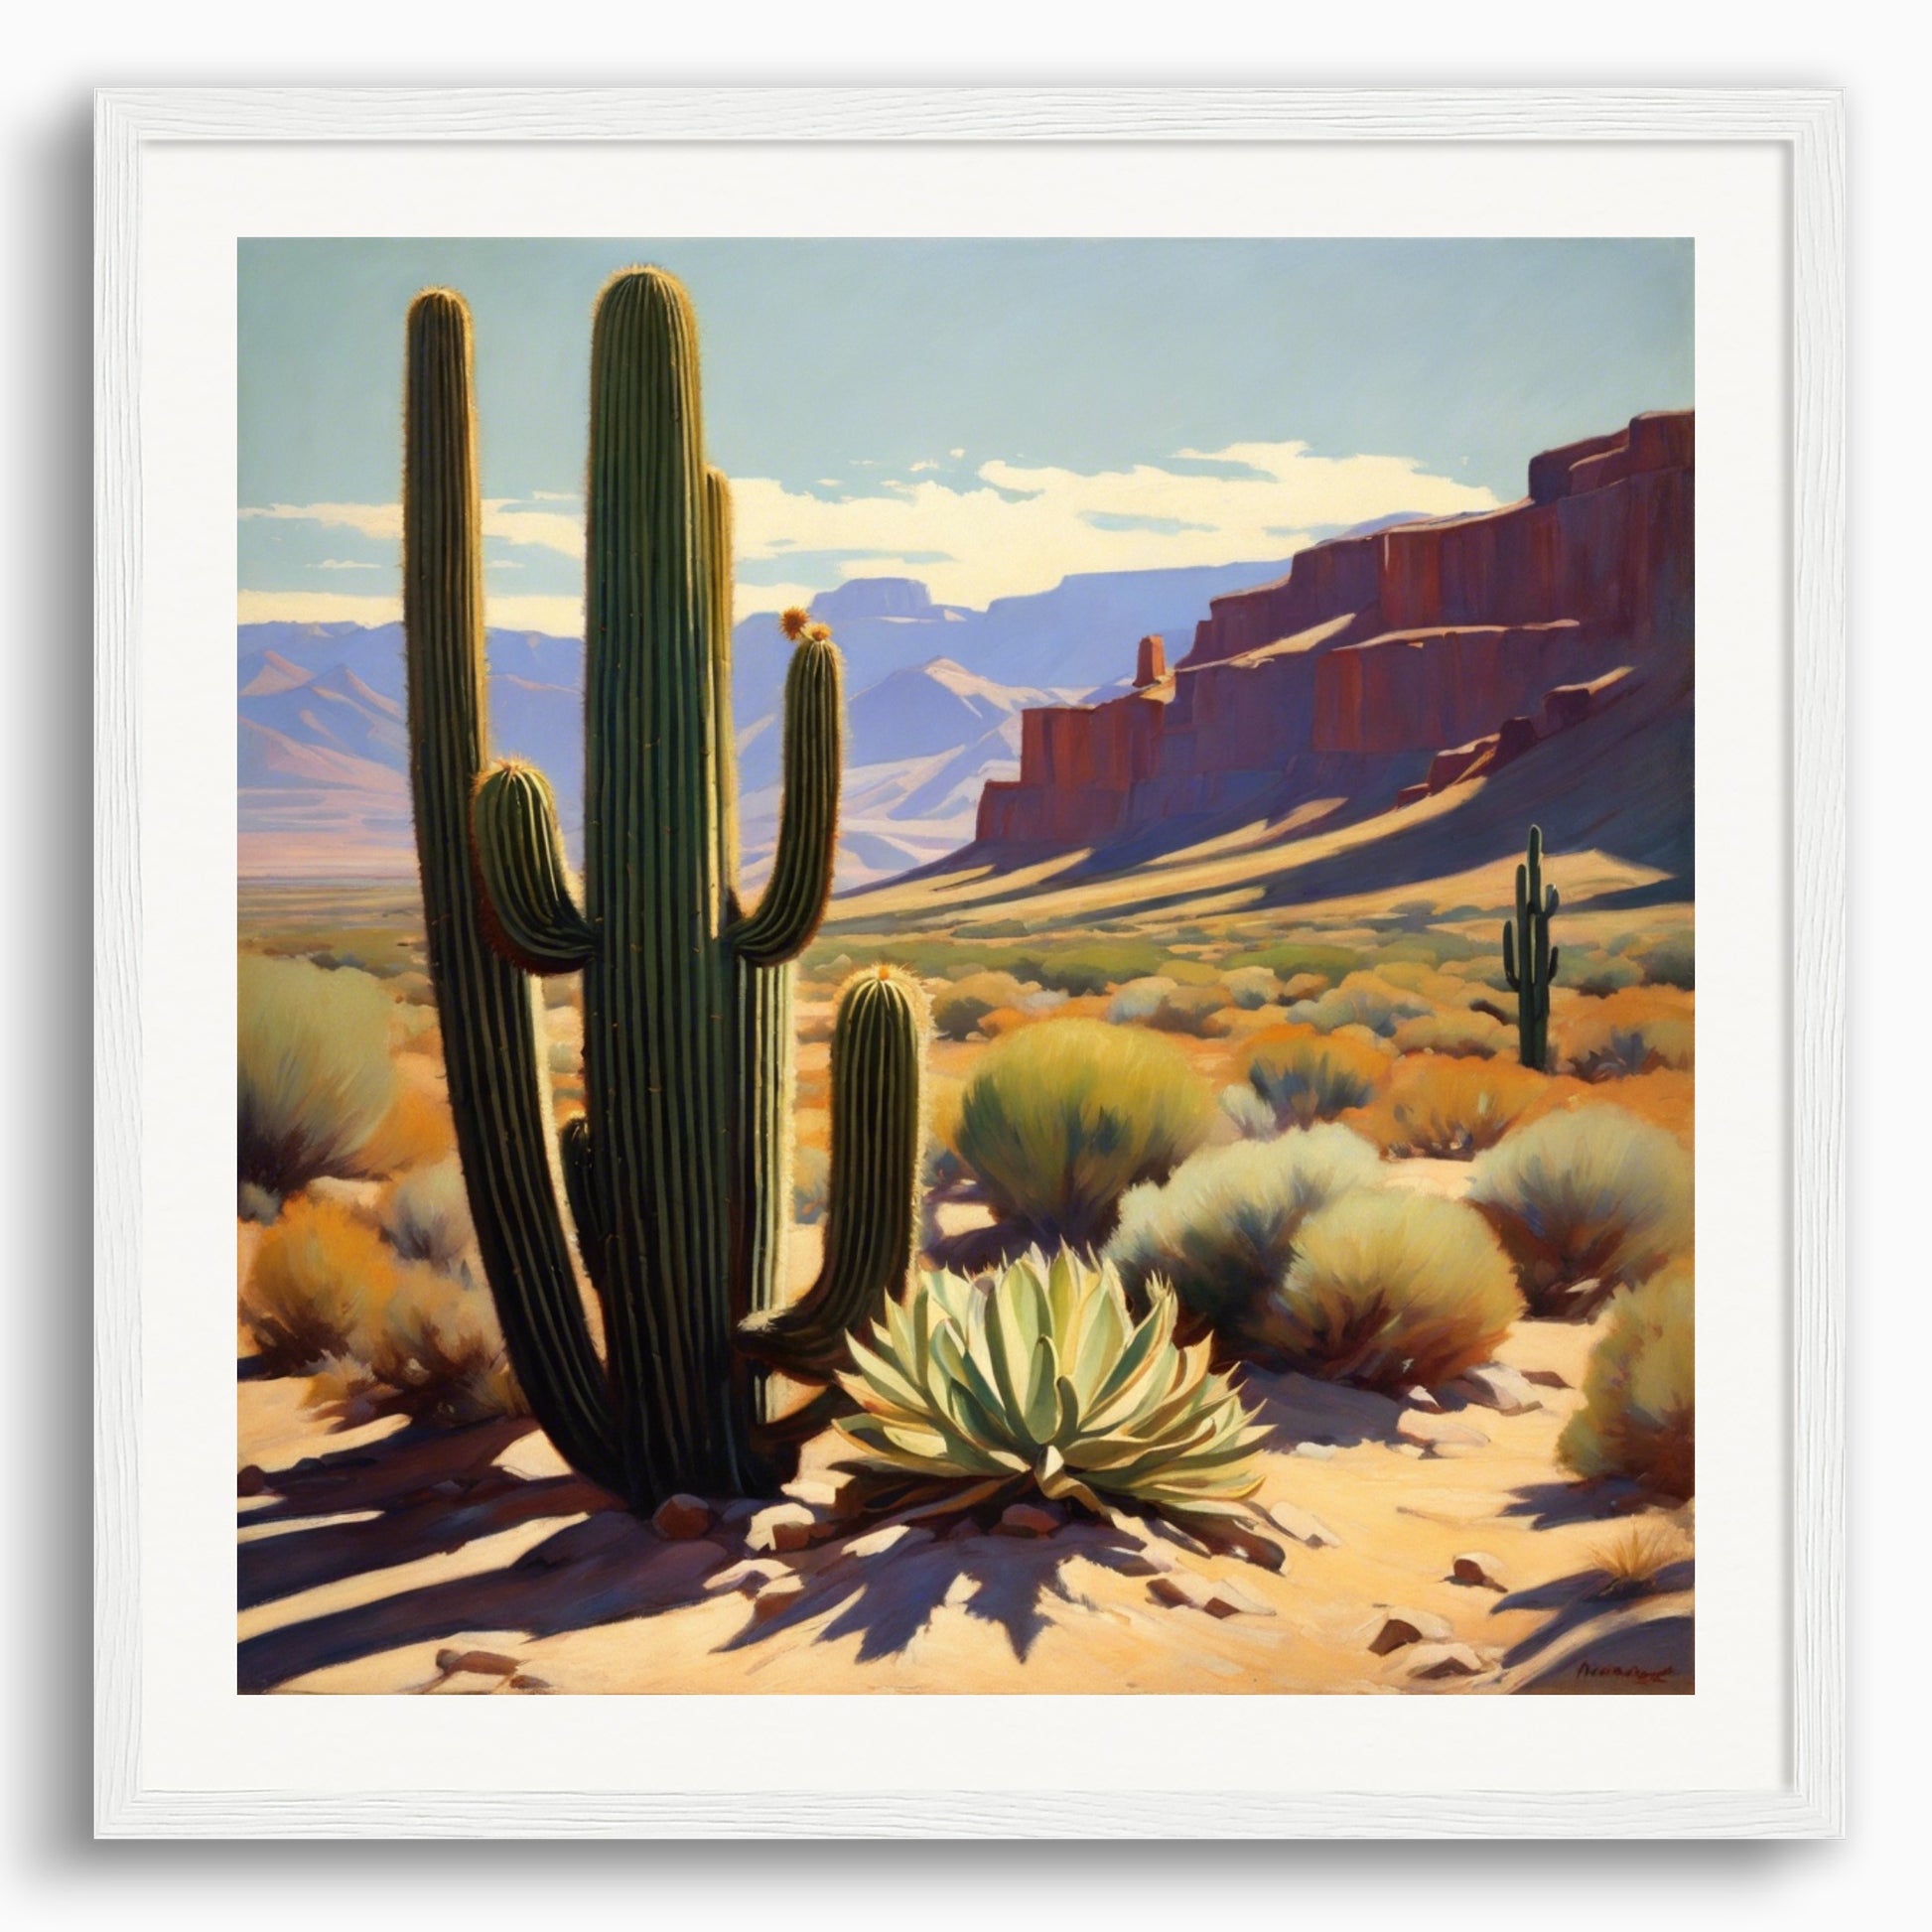 Poster: Maynard Dixon, Cactus